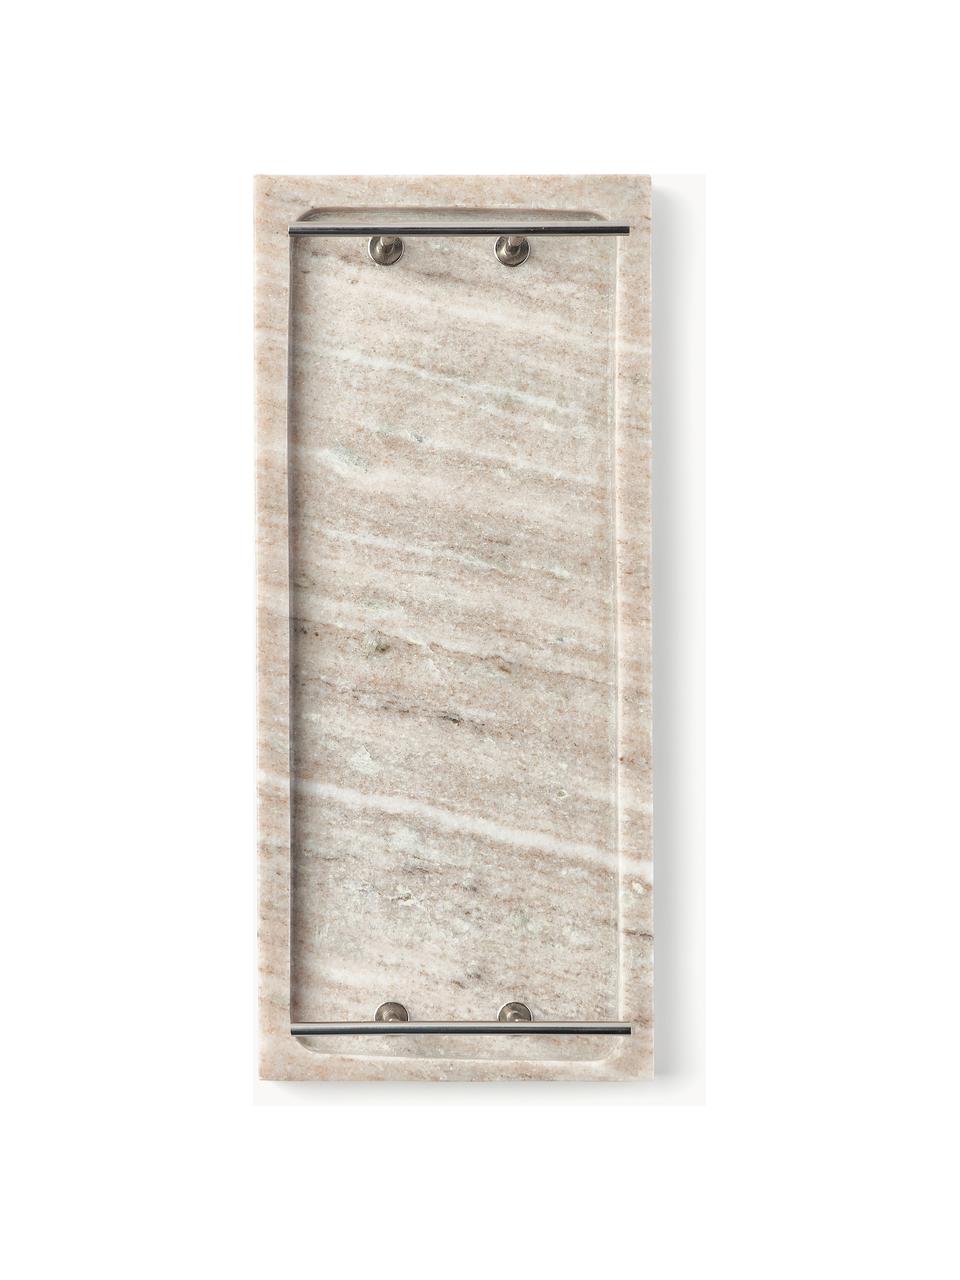 Deko-Tablett Terri aus Marmor, Ablage: Marmor, Griffe: Metall, beschichtet, Beige, marmoriert, B 30 x T 13 cm